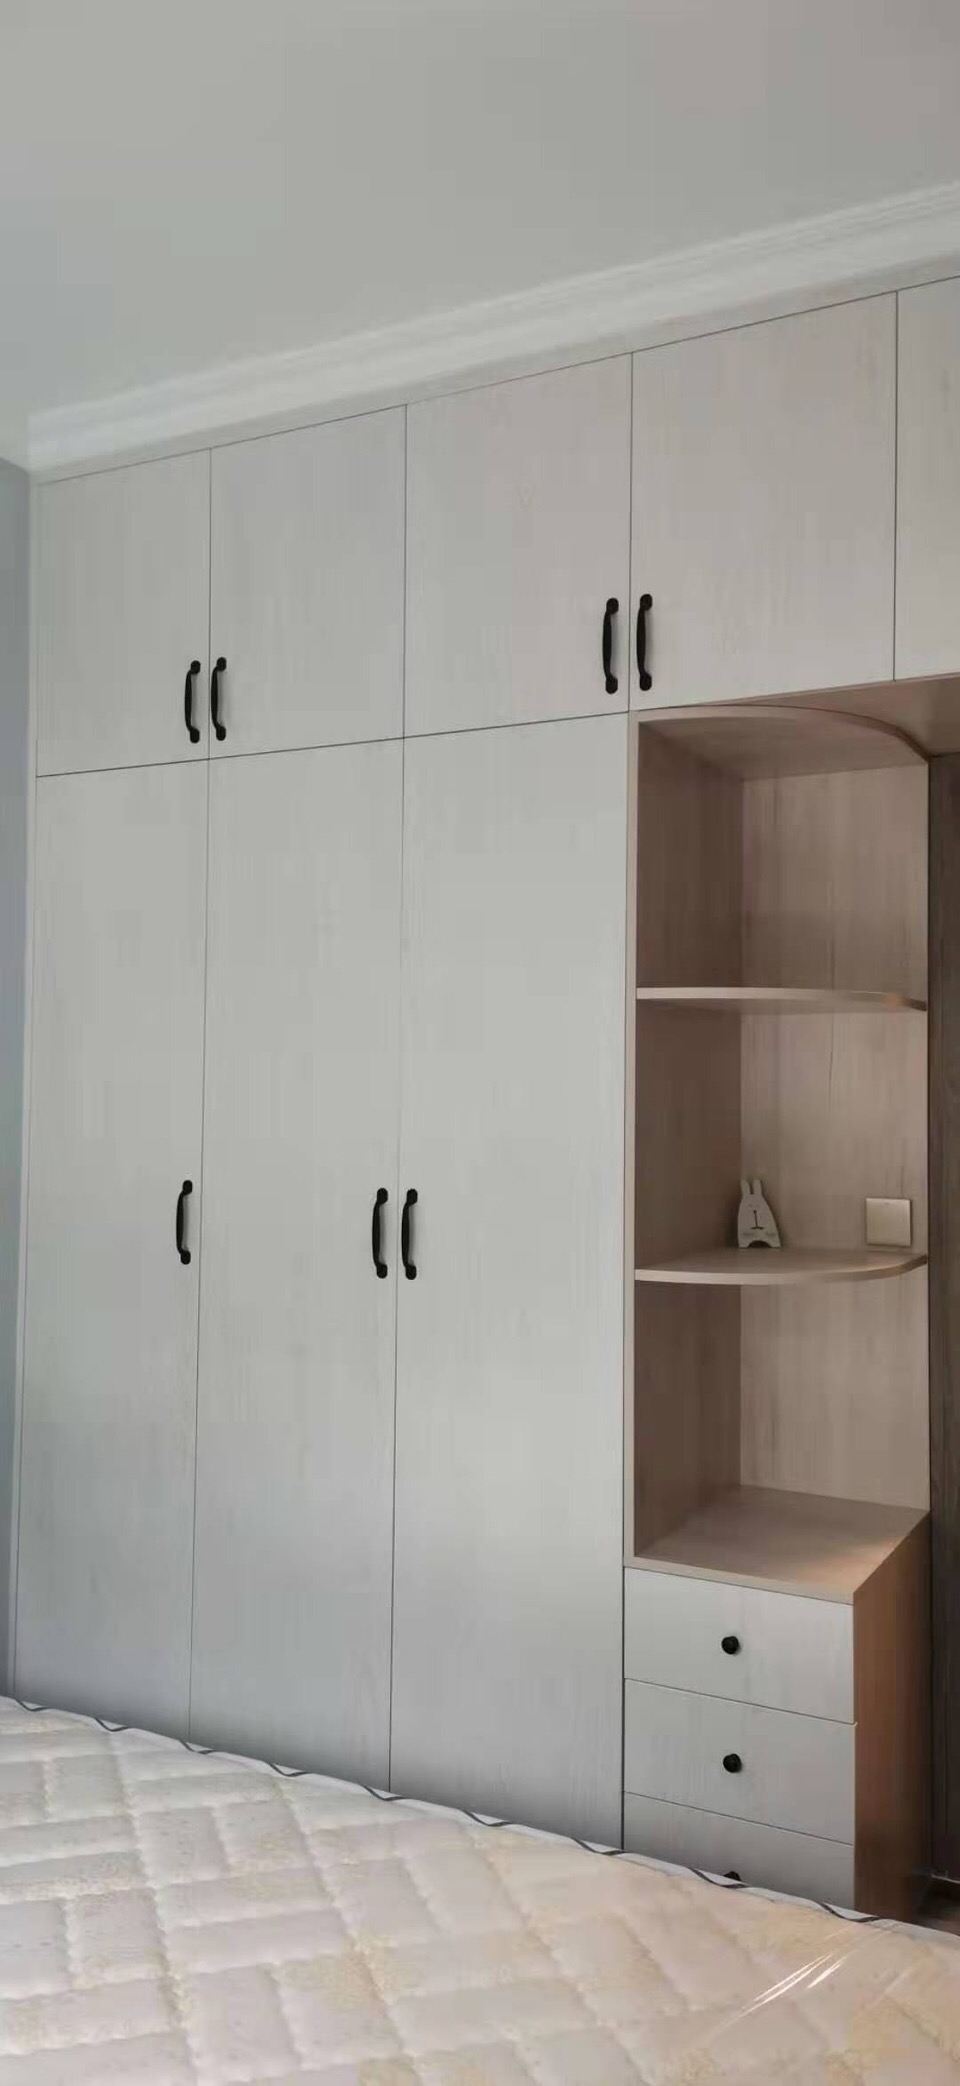 定制的衣柜分为两种颜色,其中柜体是原木色,加上白色的柜门,显得很